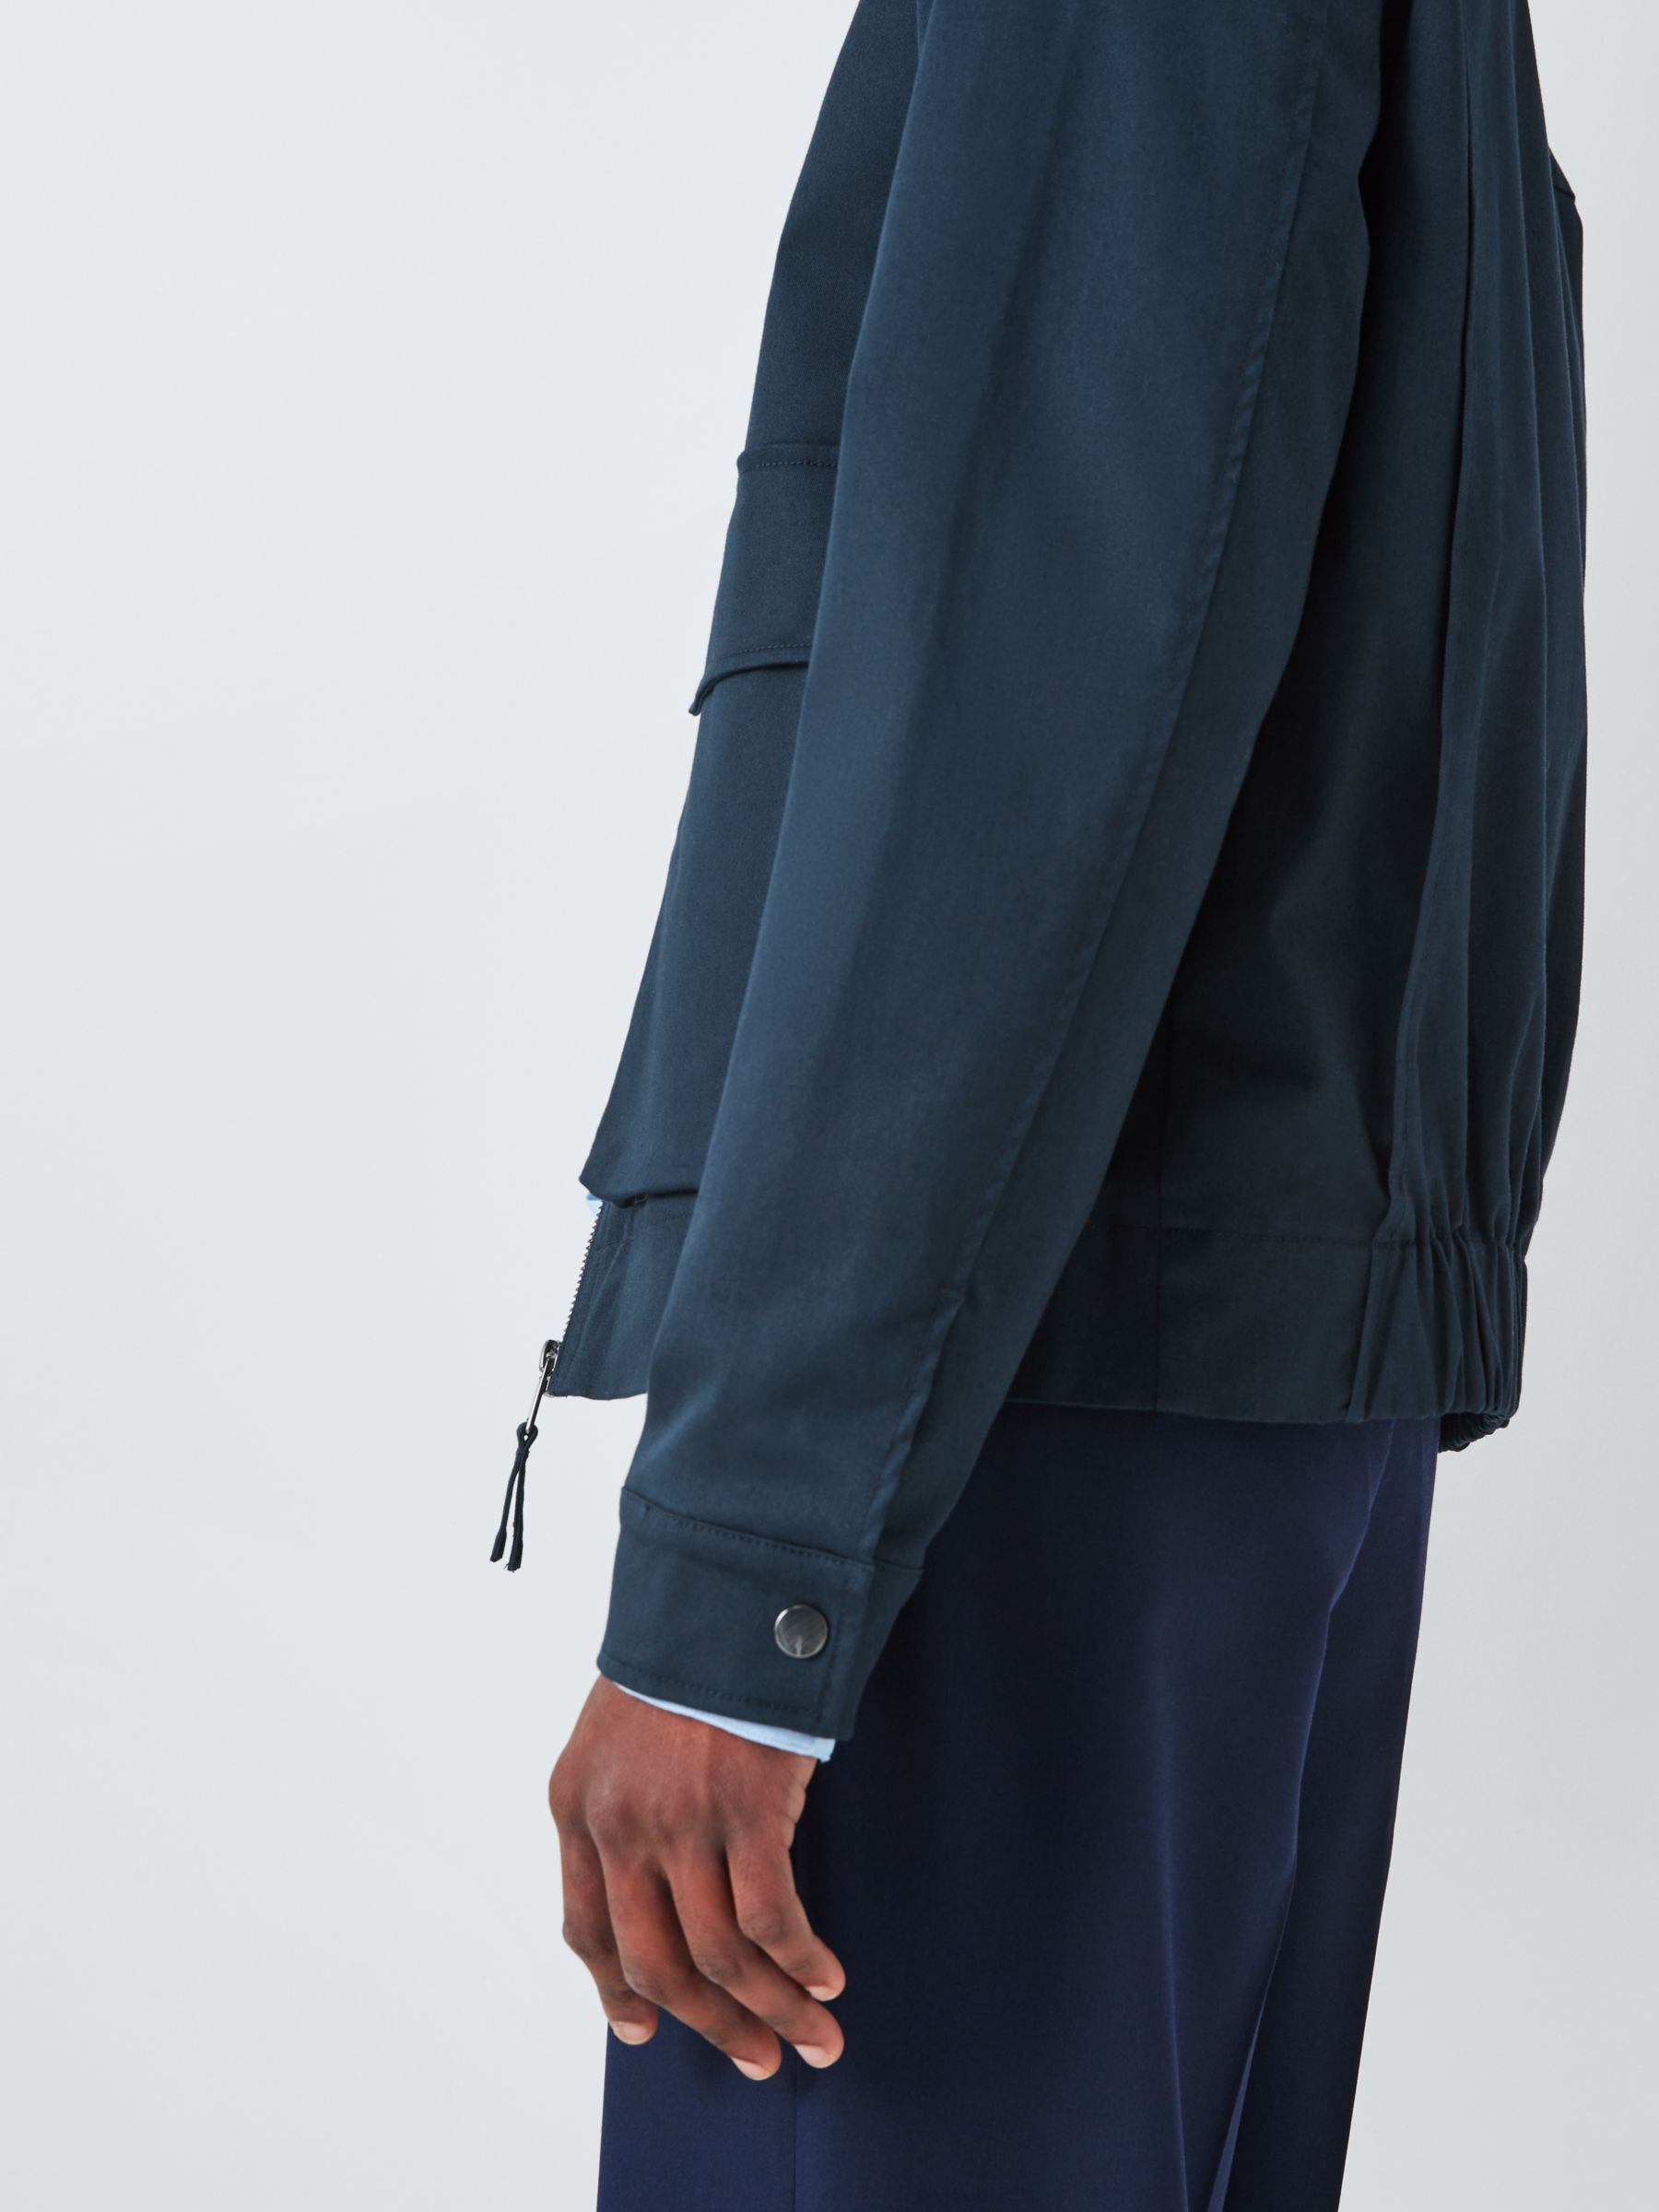 Kin Tailored Cotton Jacket, Navy, M